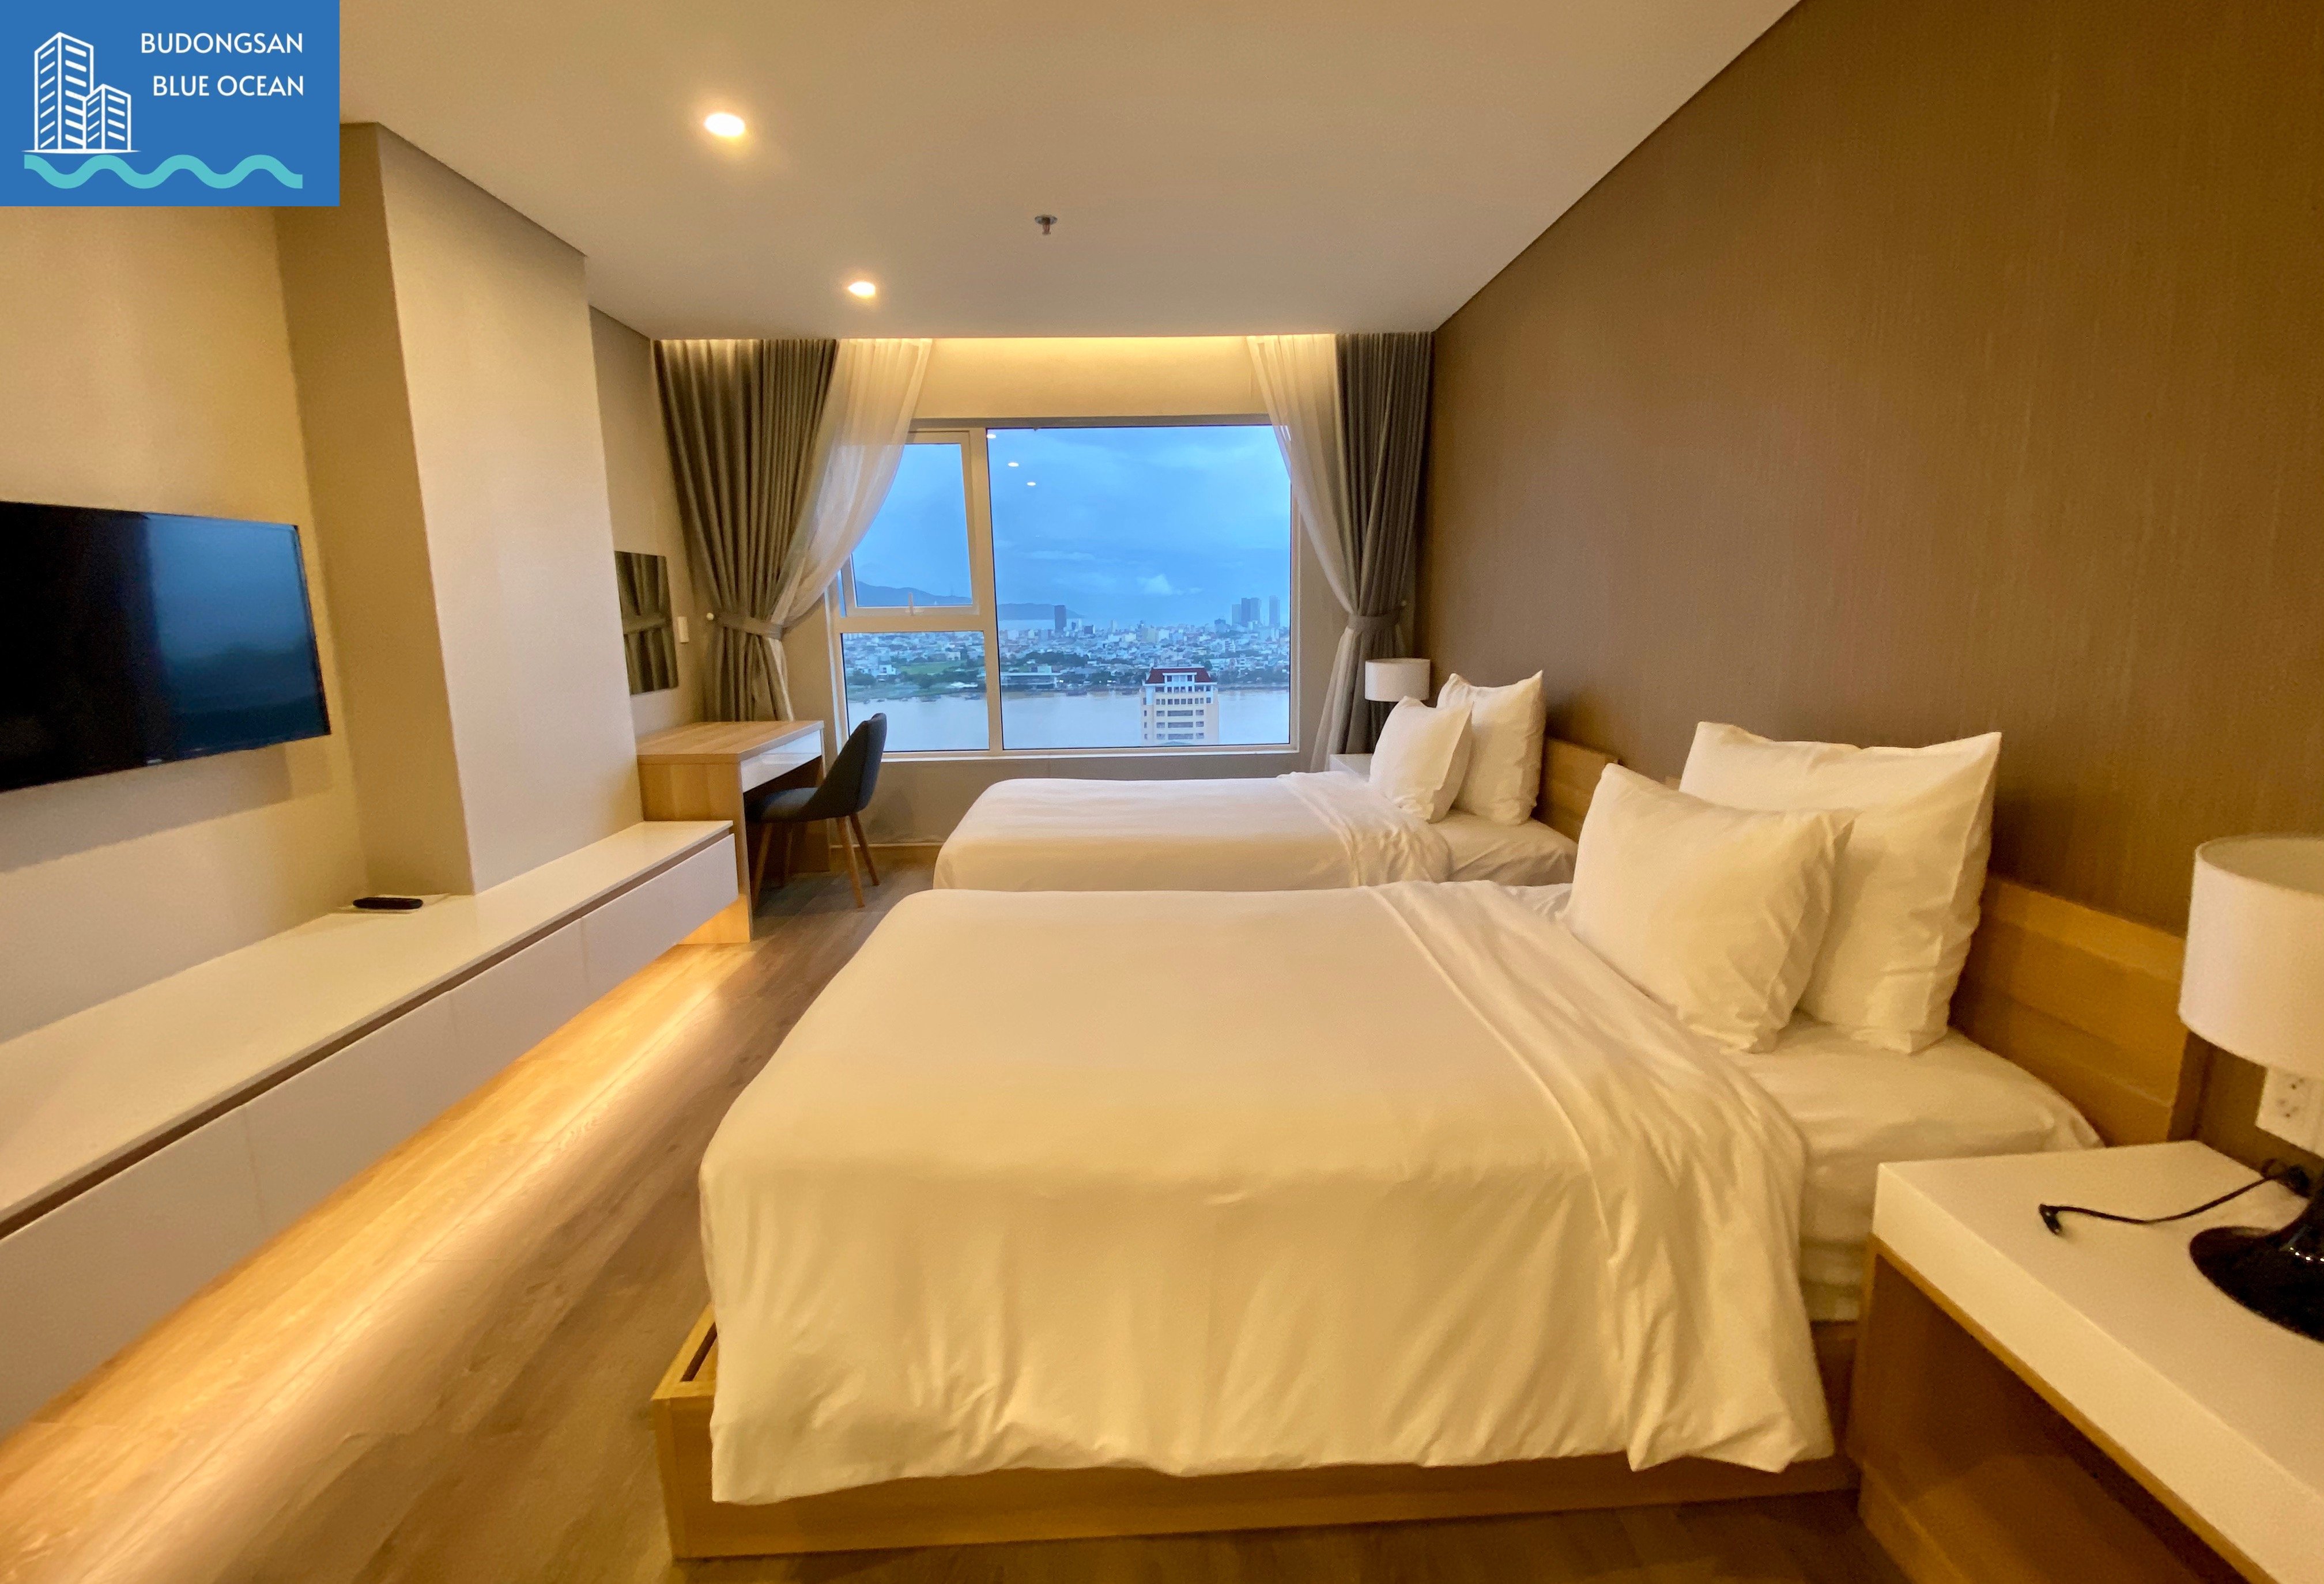 Fhome Zen bán giá chỉ 2,35 tỷ căn hộ 1PN view cực đẹp Budongsan Biển Xanh 2